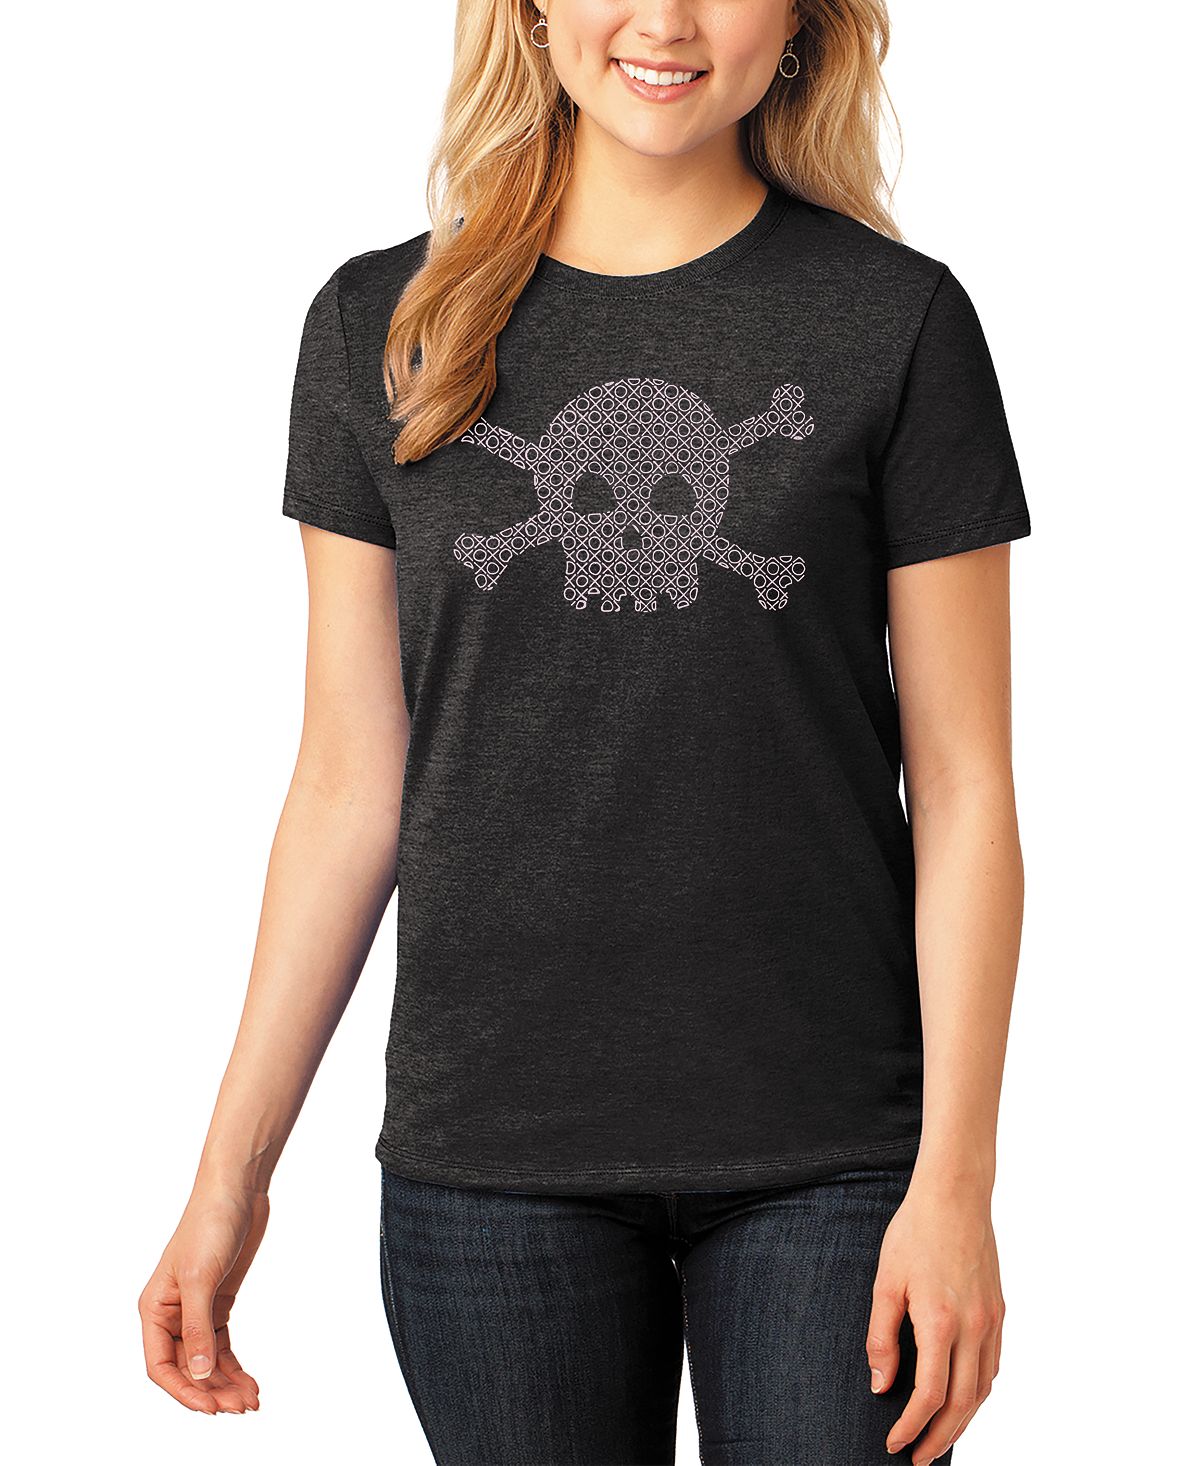 Женская футболка premium blend word art xoxo с черепом LA Pop Art, черный